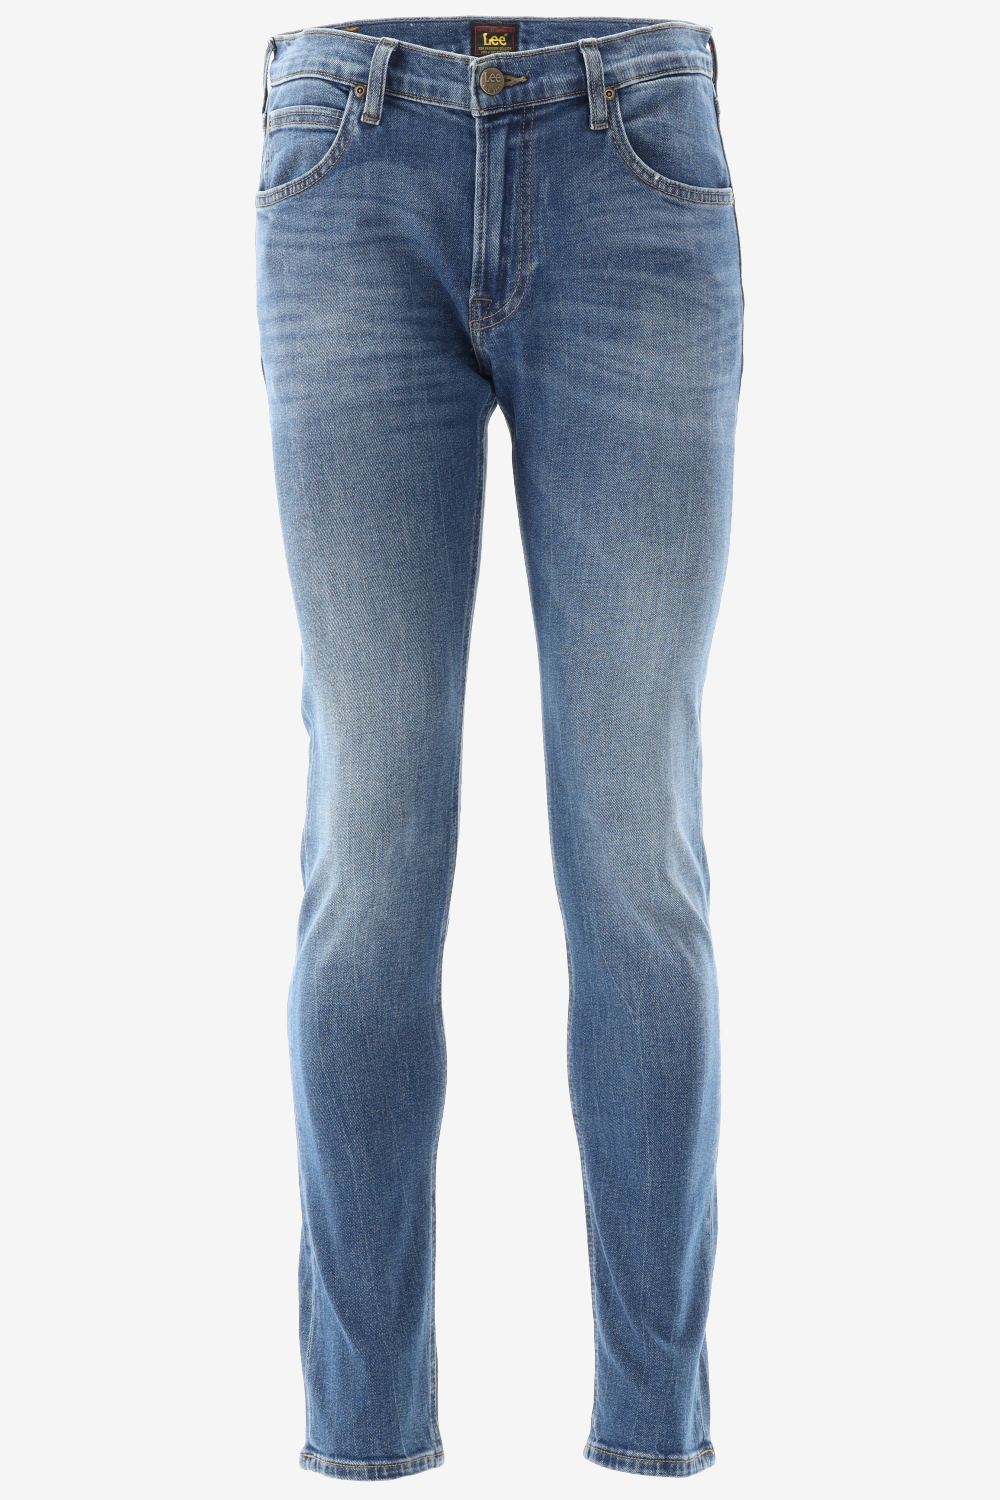 LEE Luke Jeans - Heren - Fresh - W33 X L34